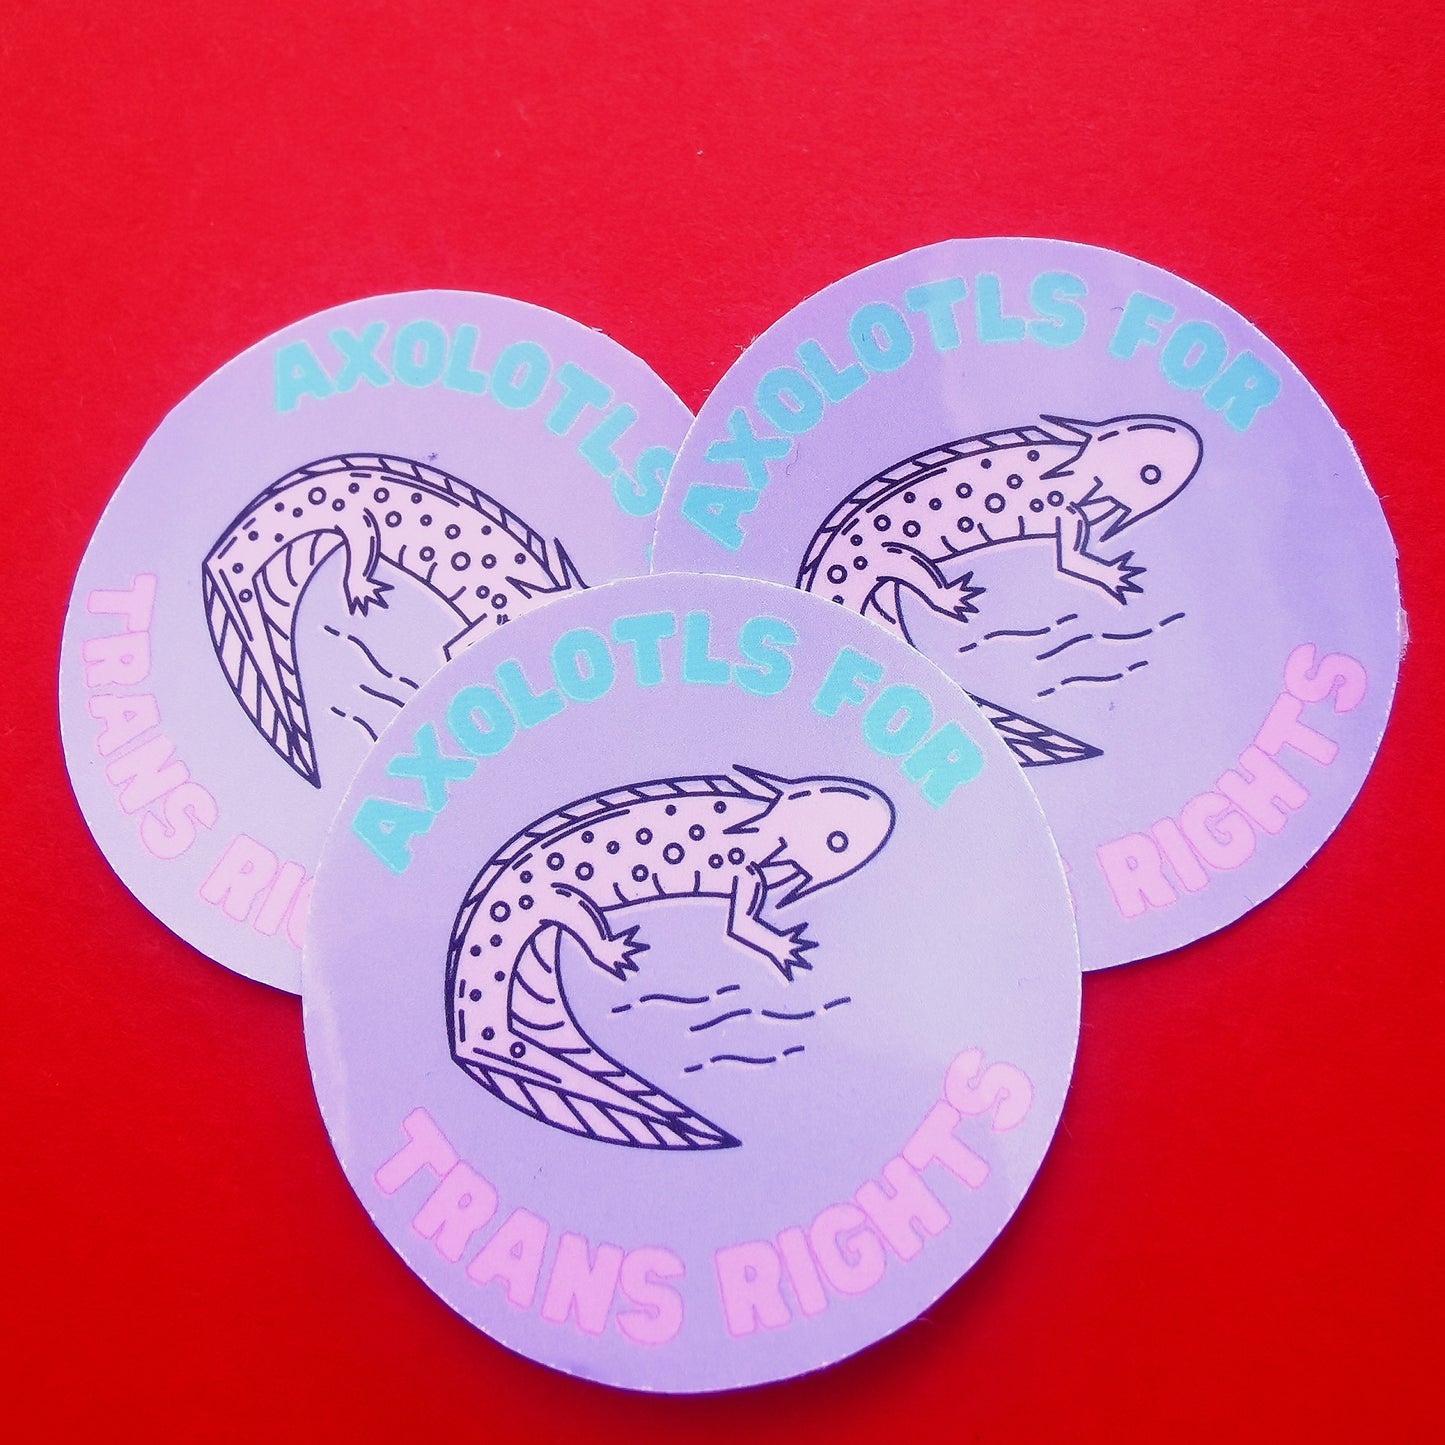 Axolotls for Trans Rights Sticker